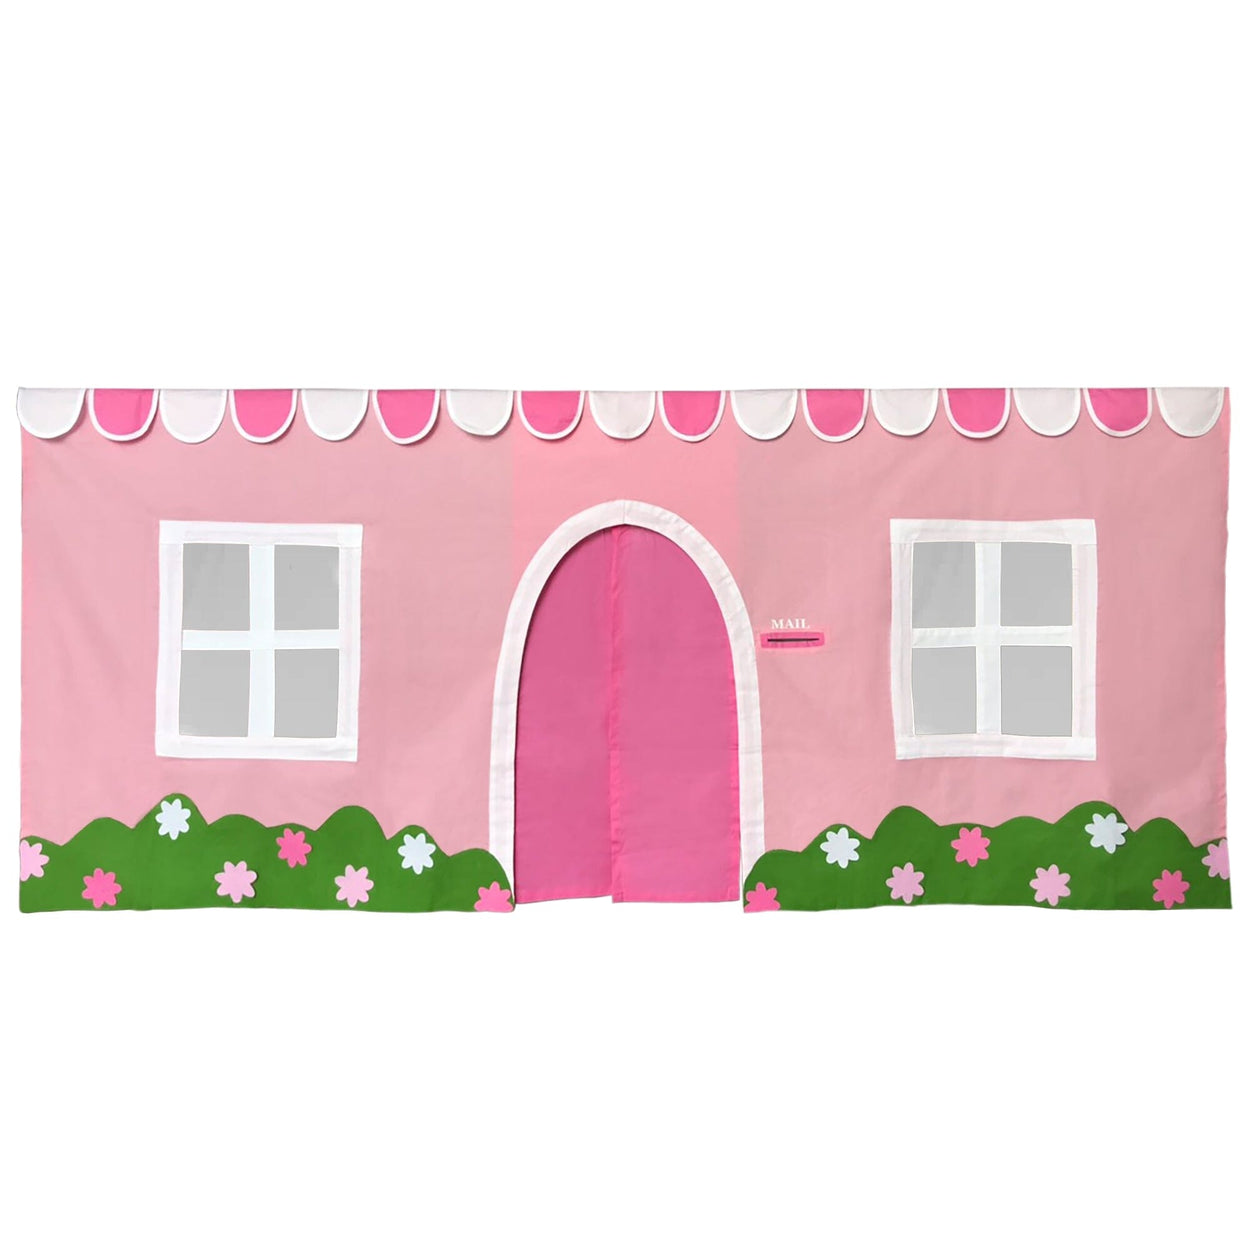 180033-064 : Curtain Farmhouse Curtain, Light Pink/White